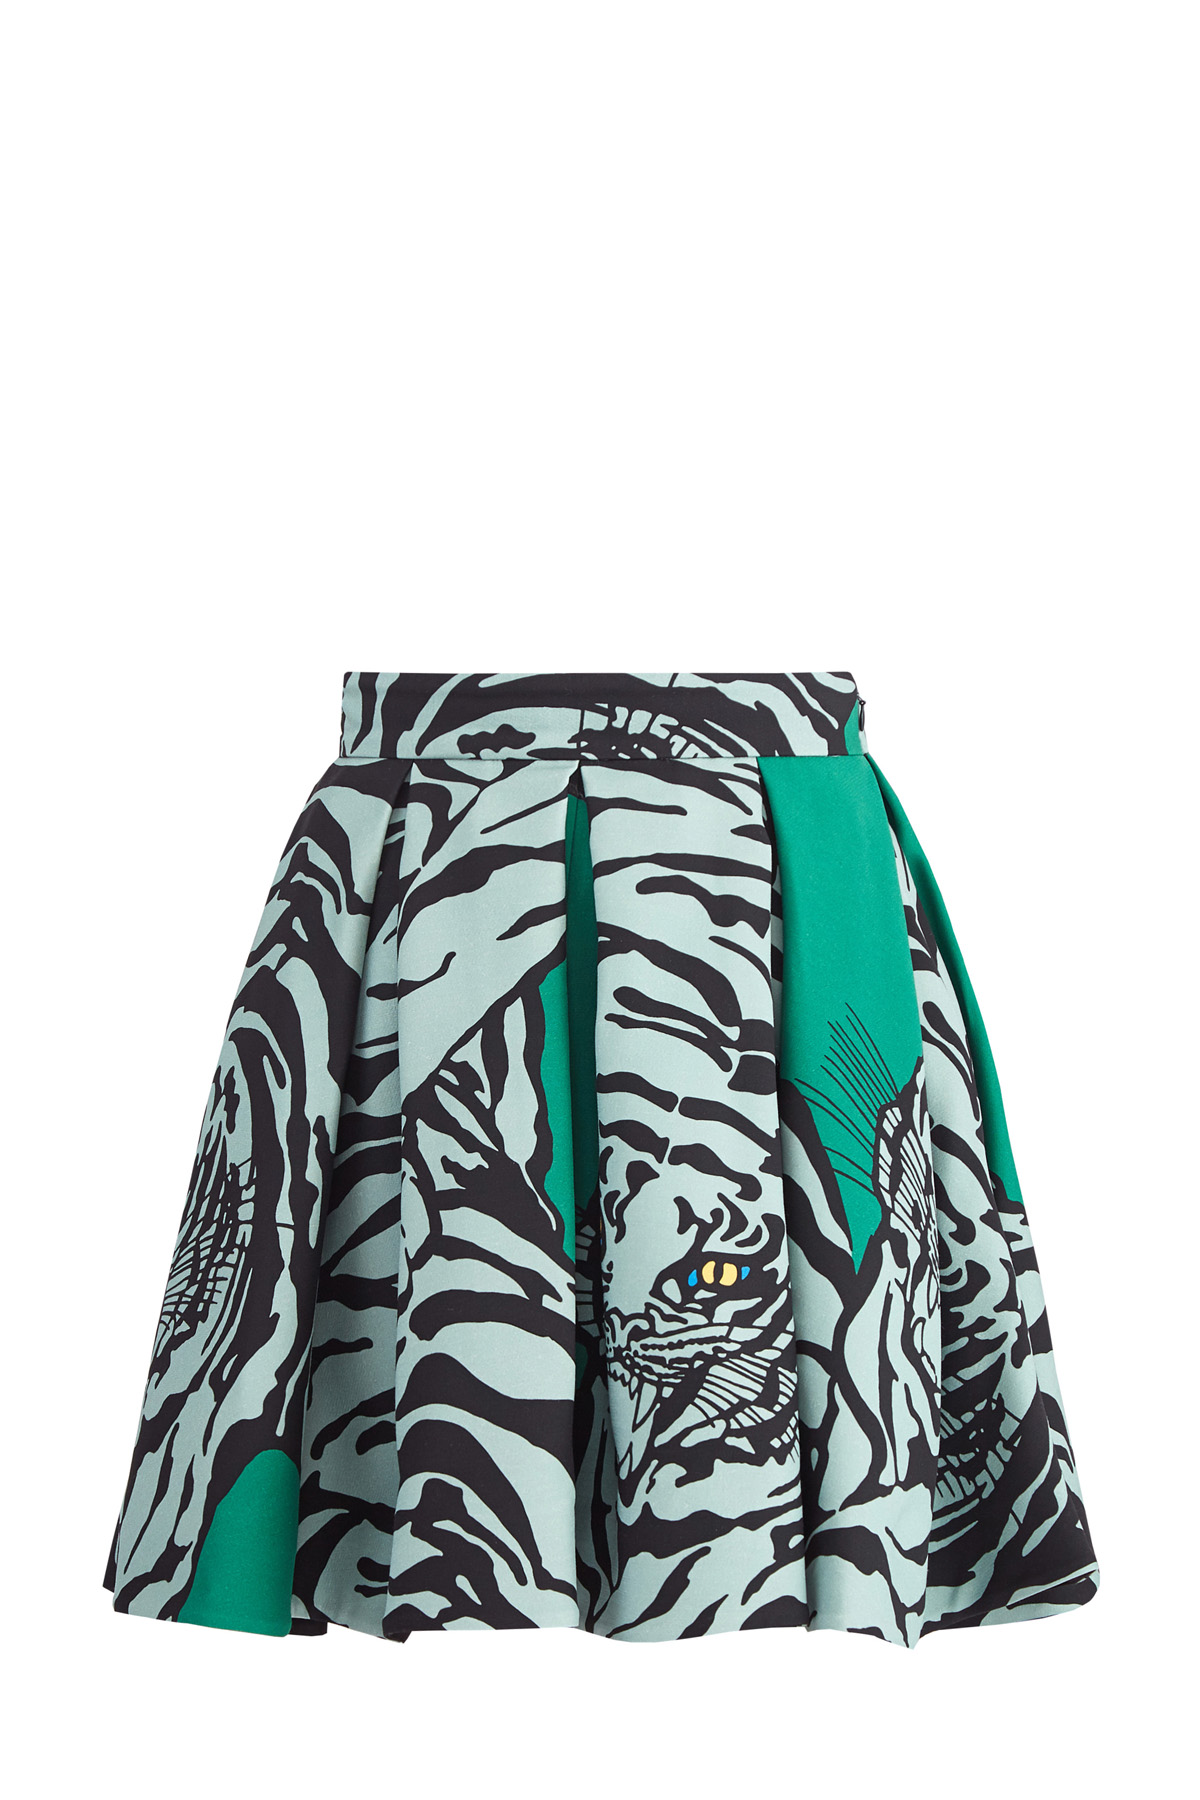 Юбка изумрудного цвета из ткани Crepe Couture с принтом Tiger Re-edition VALENTINO, размер 40 - фото 1